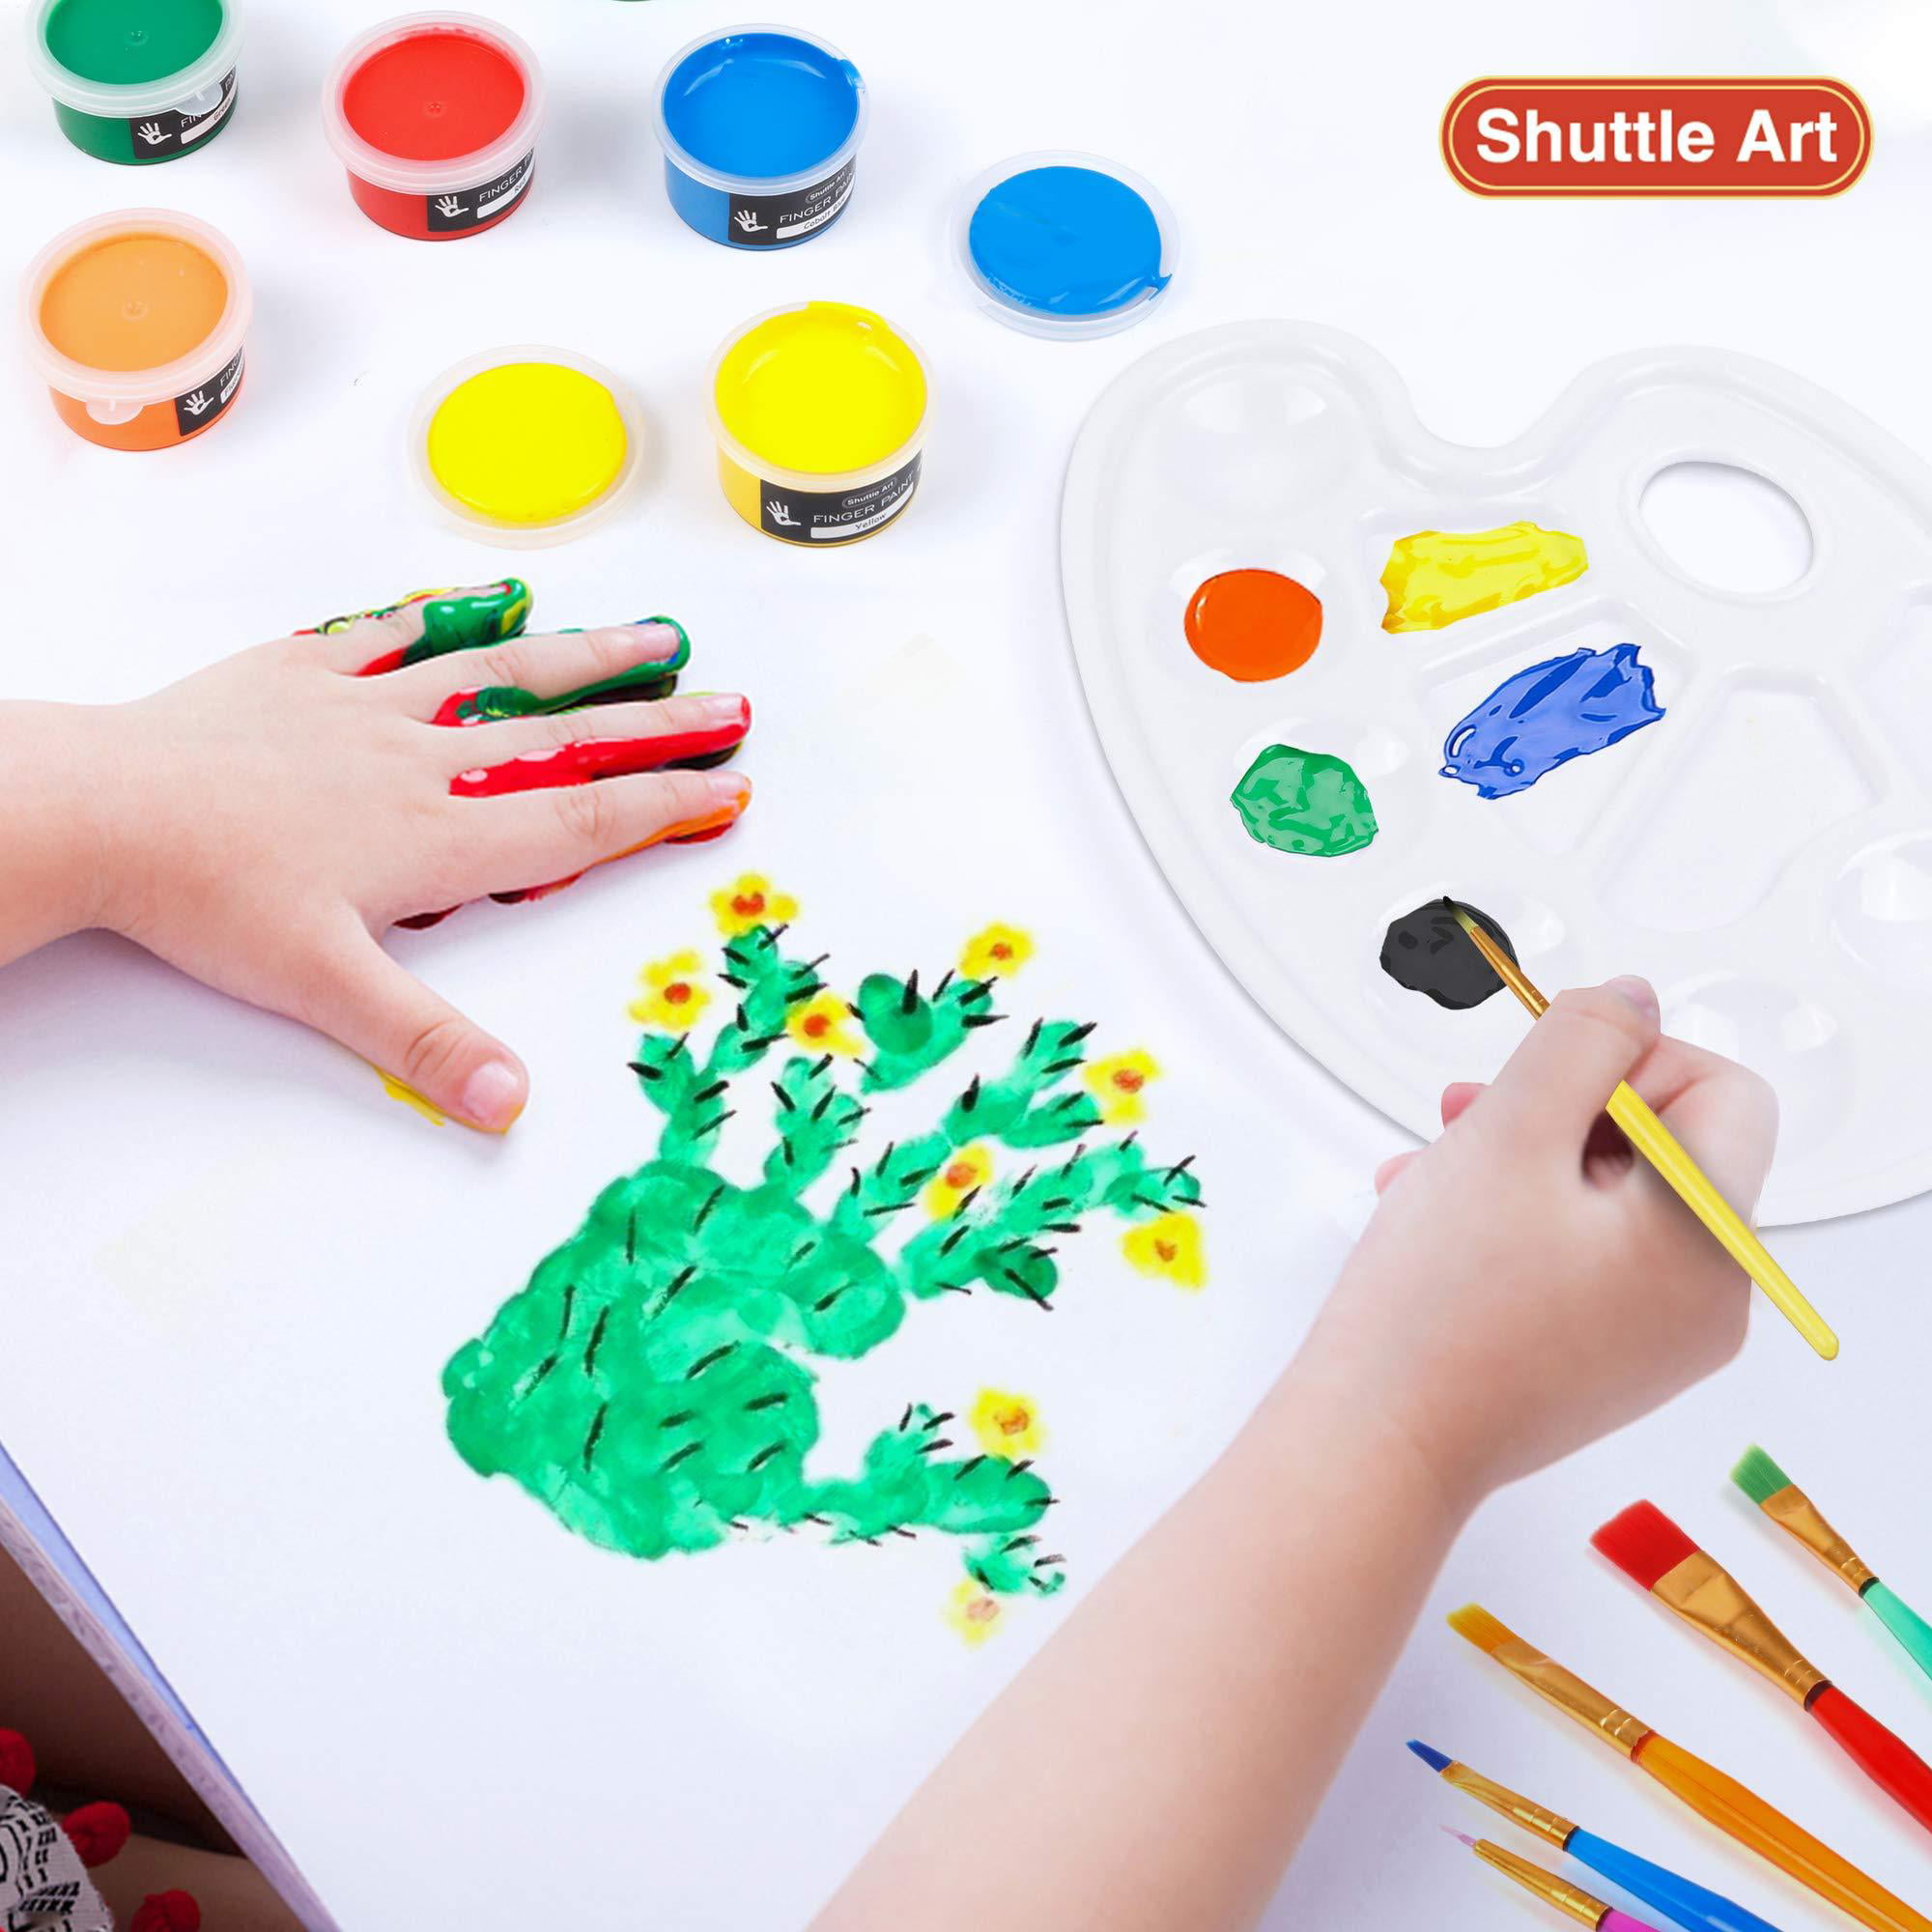 Washable Finger Paint Set Shuttle Art 46 Pack Kids Paint Set with 14 Colors(60ml) Finger Paints Brushes Finger Paint Pad Sponge Palette Smock